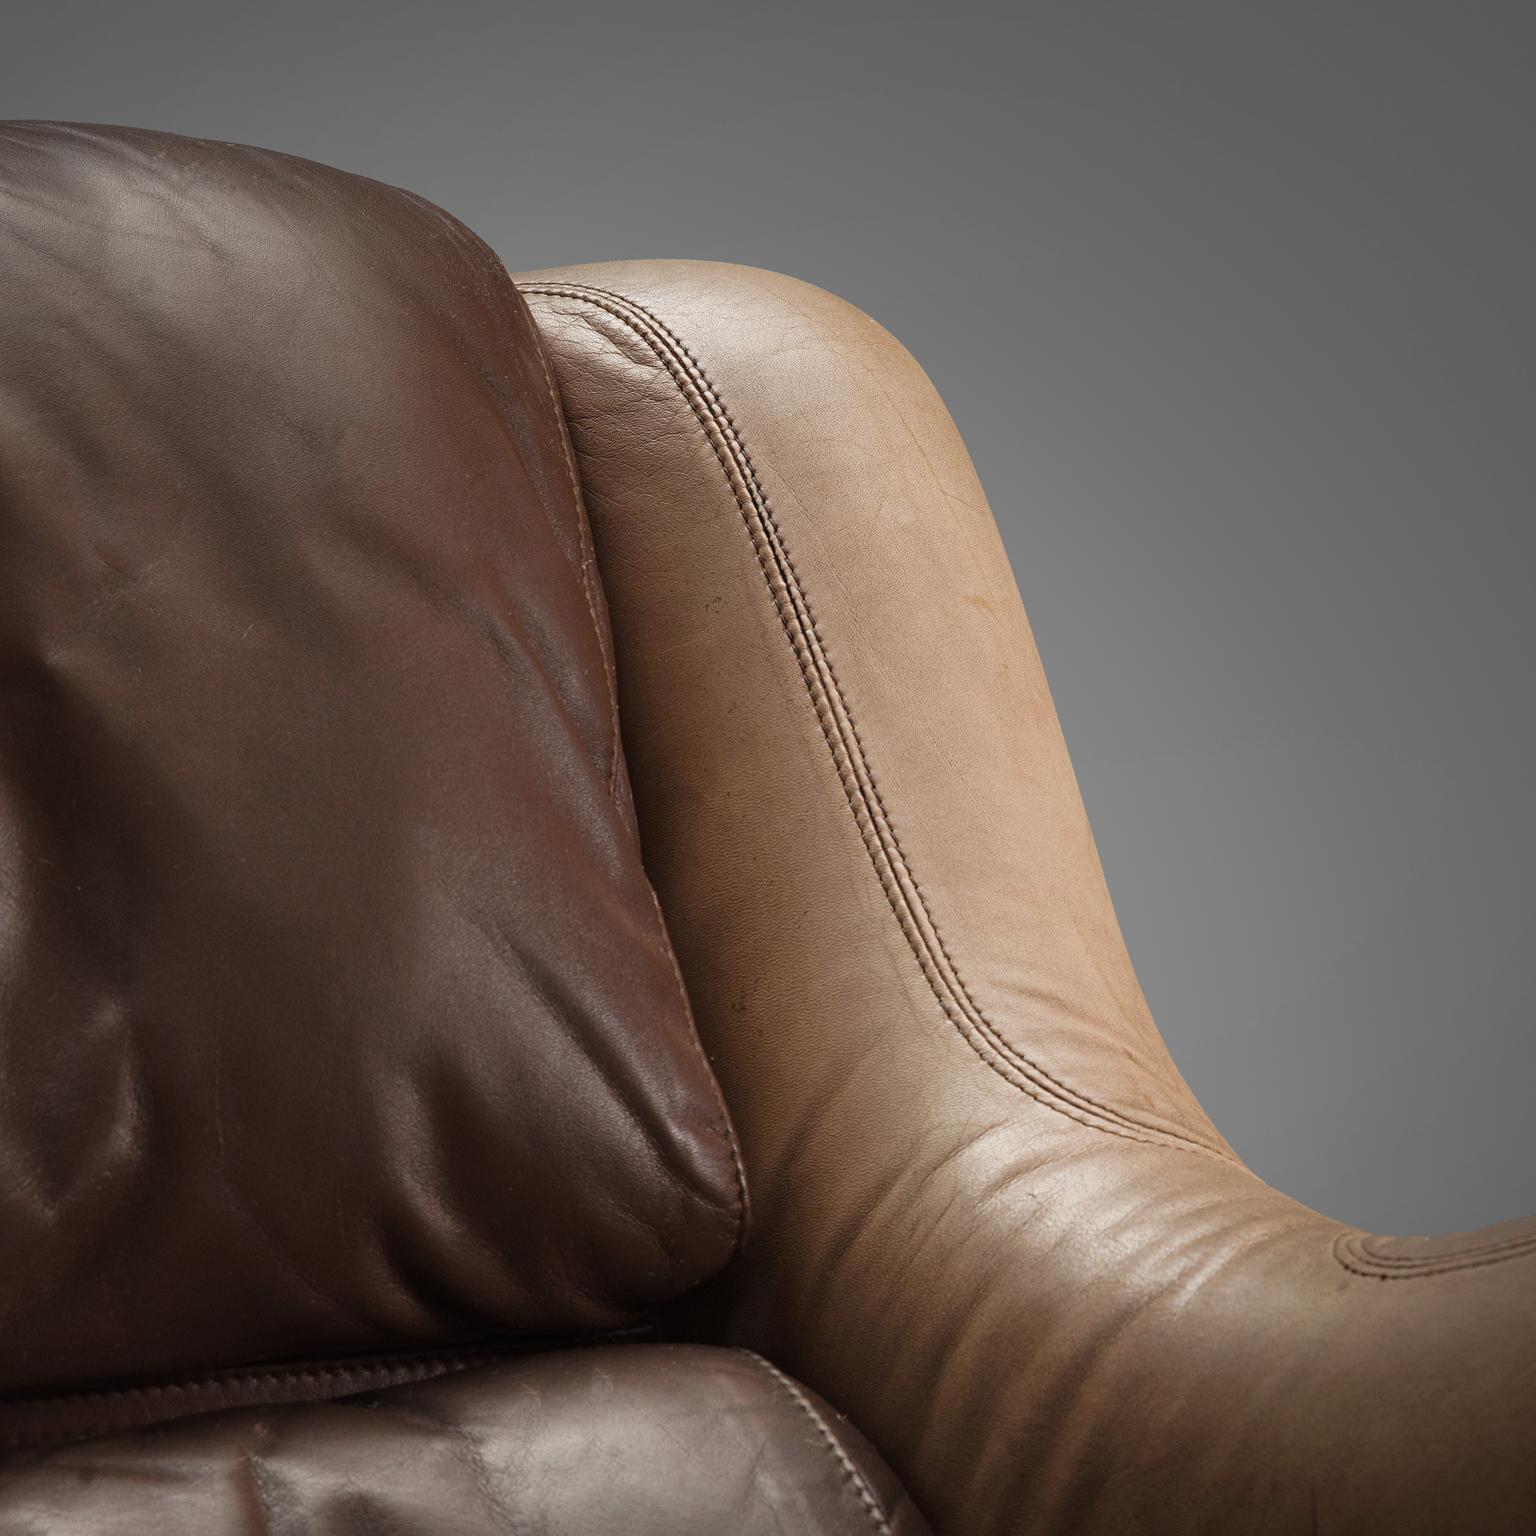 Yrjö Kukkapuro 'Karuselli' Lounge Chair in Brown Leather Upholstery For Sale 2